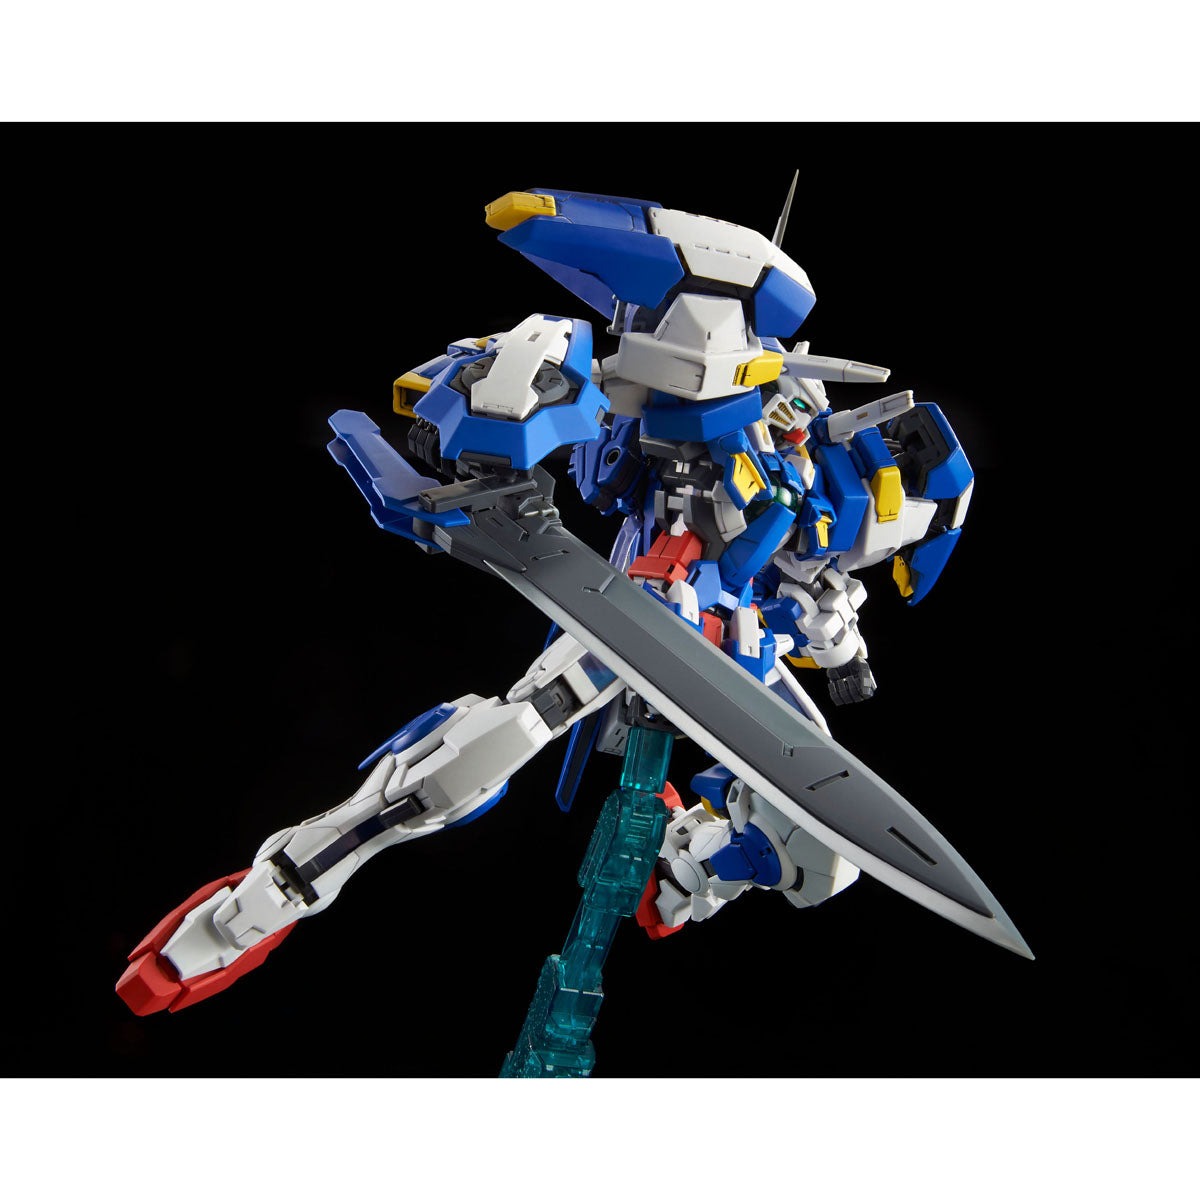 MG 1/100 Gundam Exia Avalanche